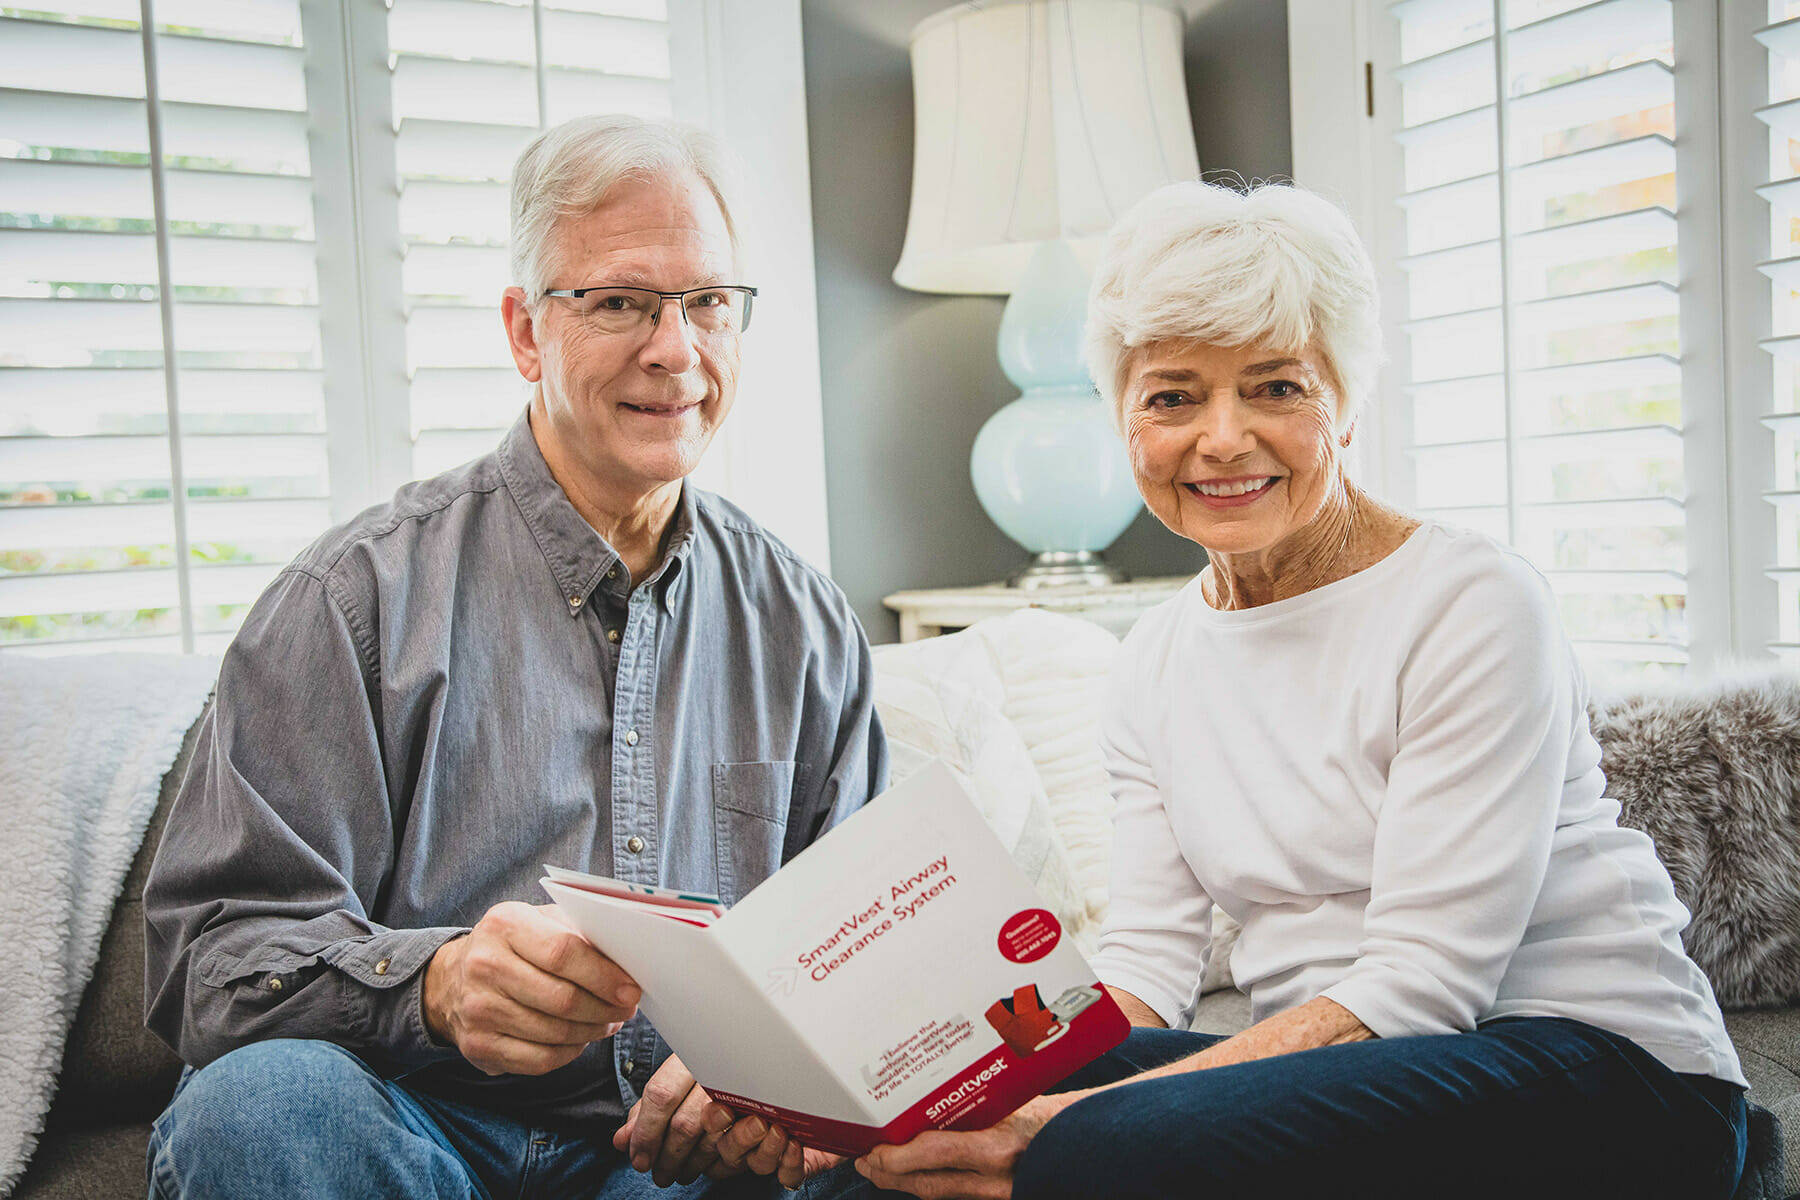 Elderly couple reading SmartVest brochure.